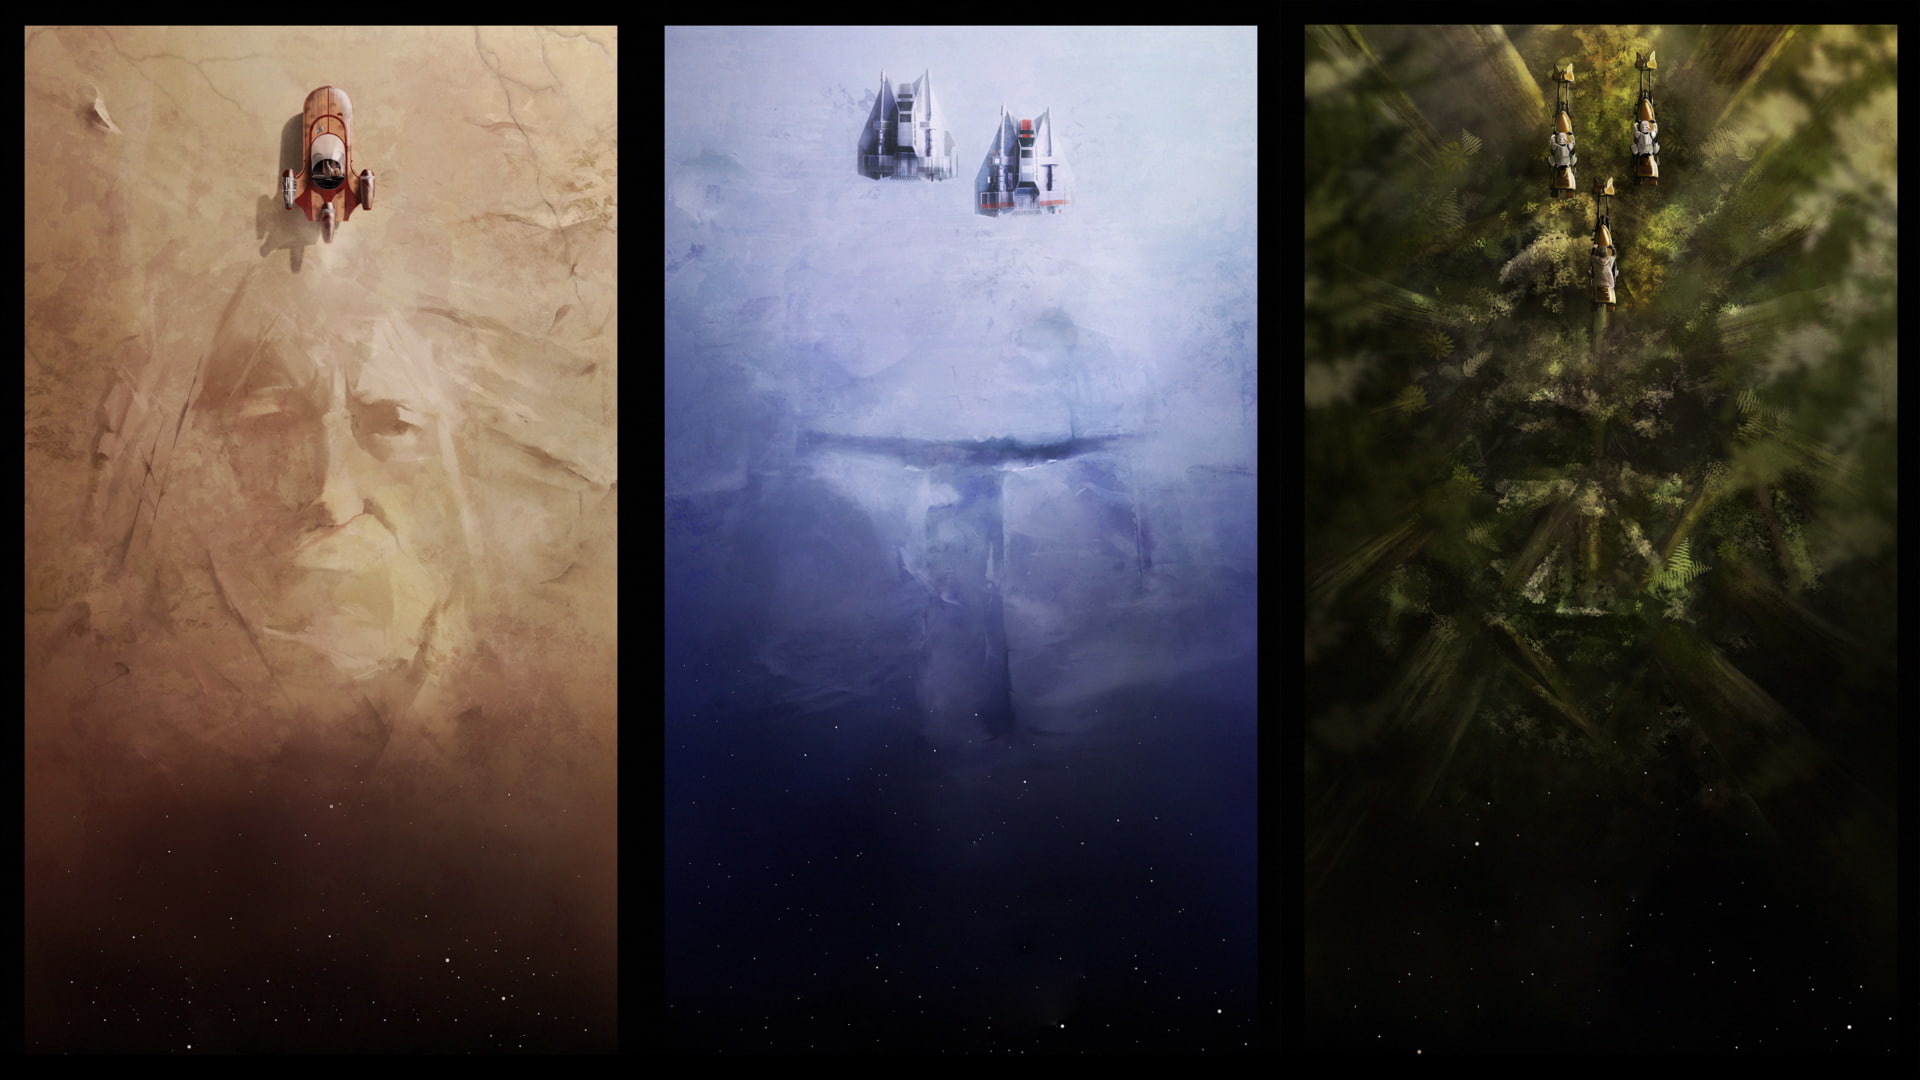 A-Wing, concept art, Star Wars, Boba Fett, Obi-Wan Kenobi, Darth Vader